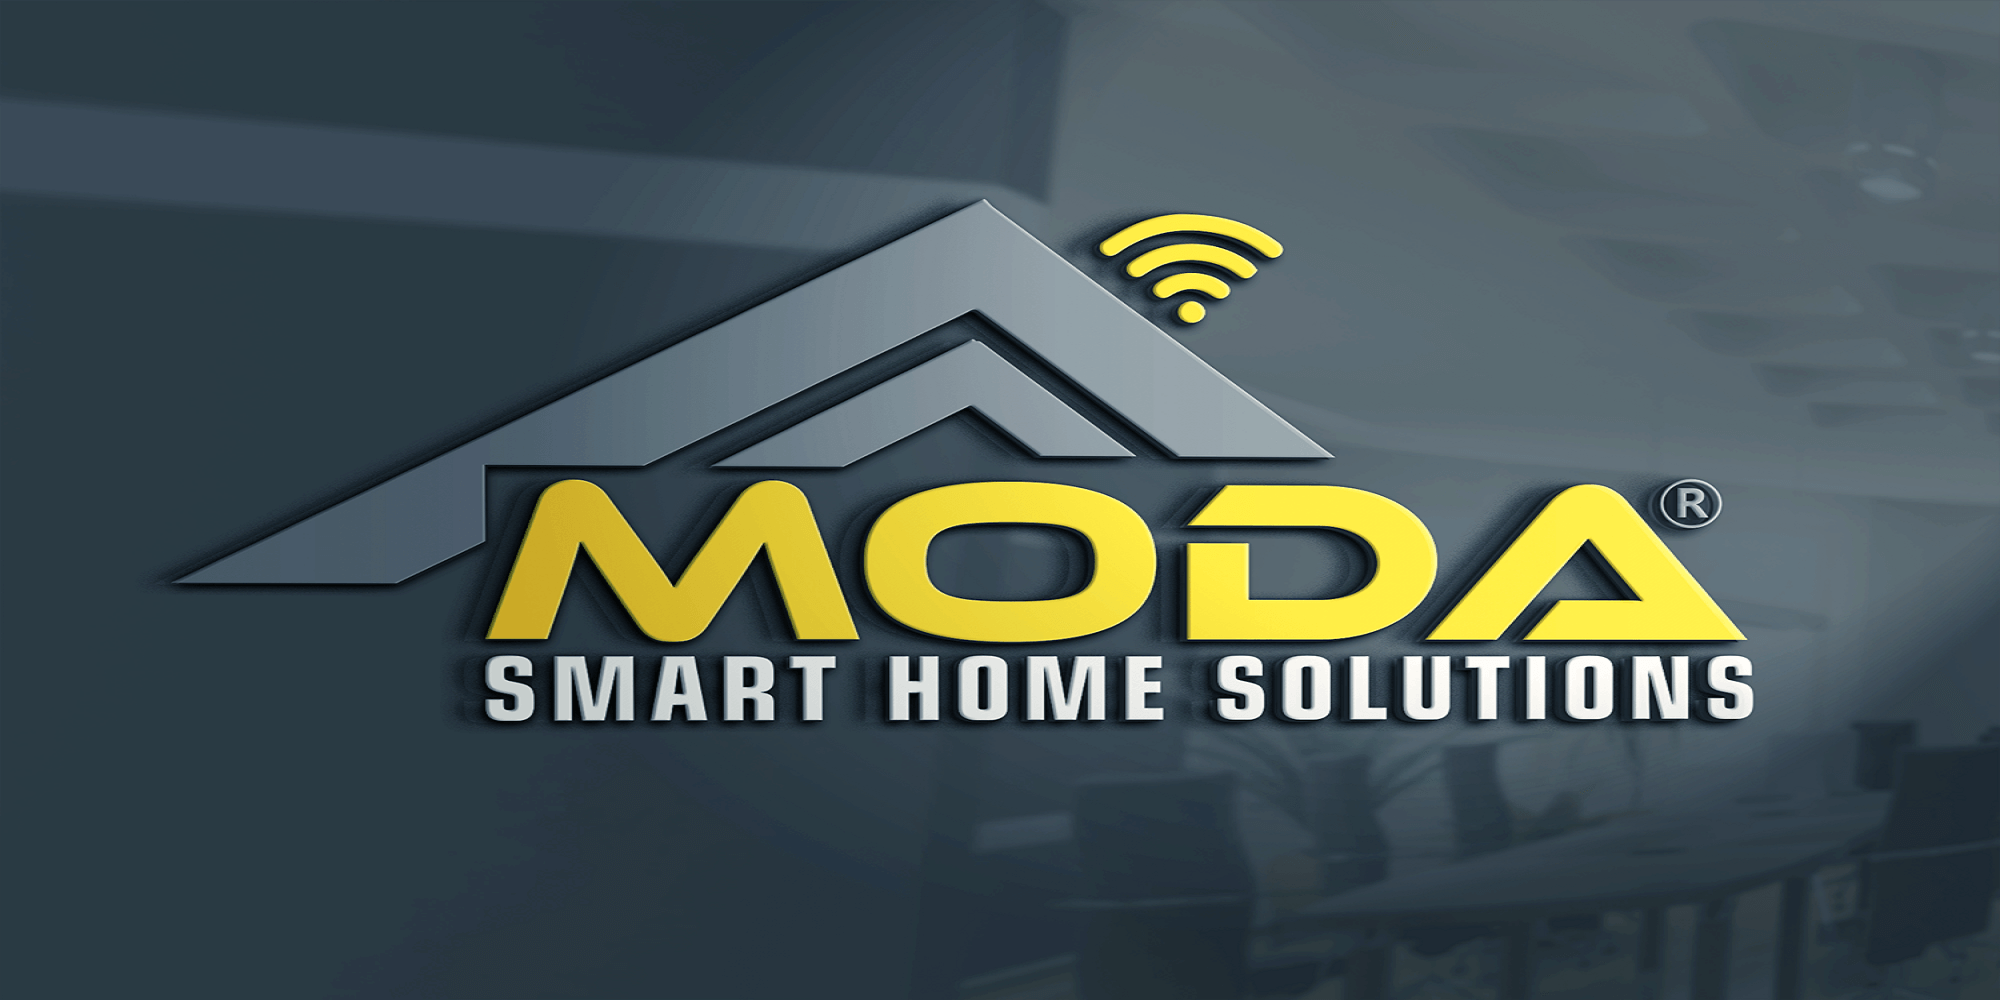 elite Supersonic hastighed sværge 1) MODA - Smart Home Solutions